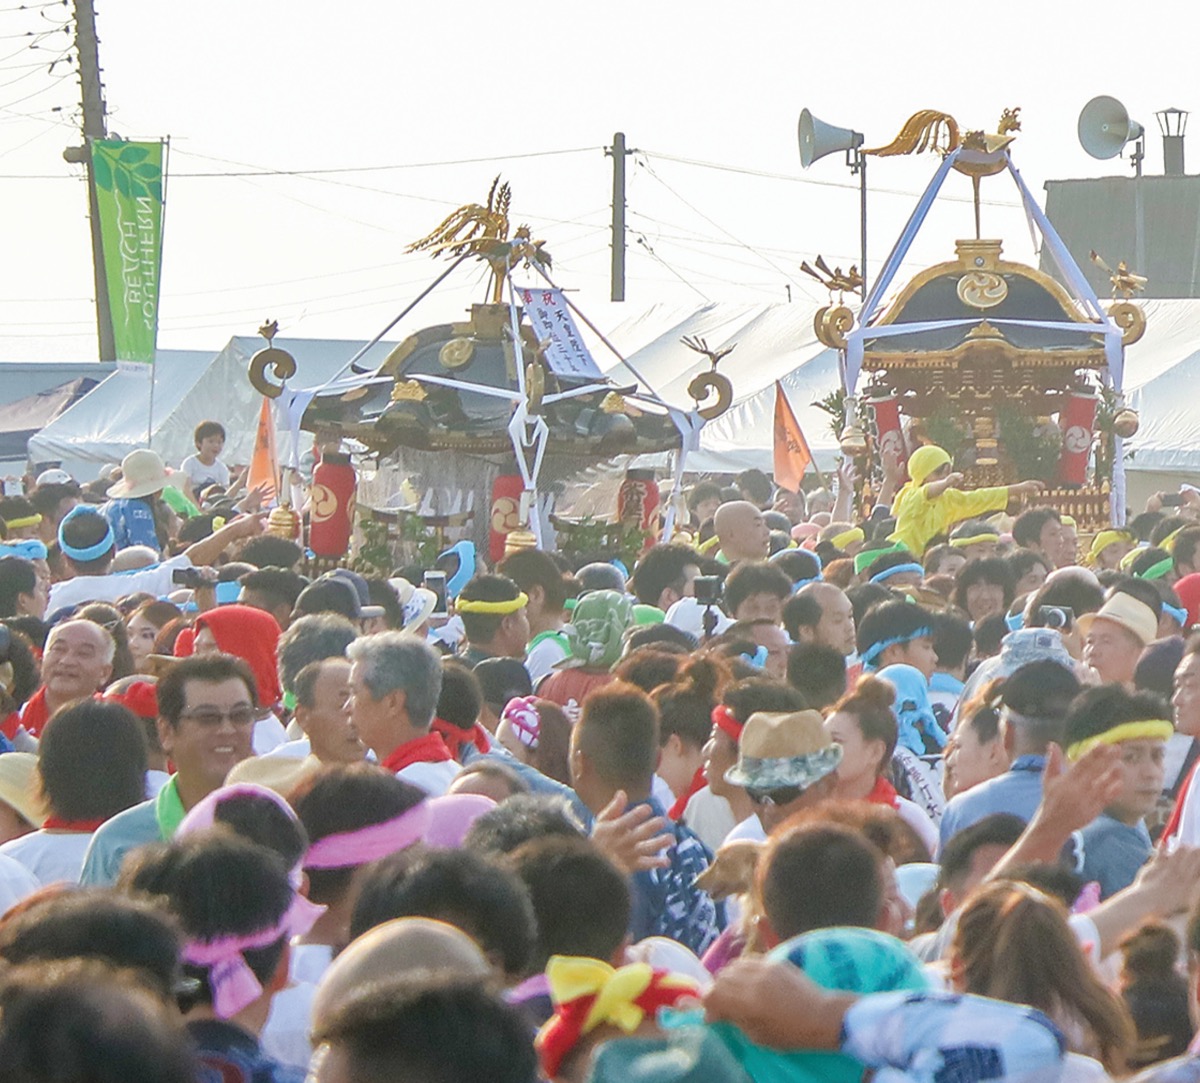 2023年開催】暁の祭典「浜降祭」(はまおりさい) 茅ヶ崎西浜海岸で神輿